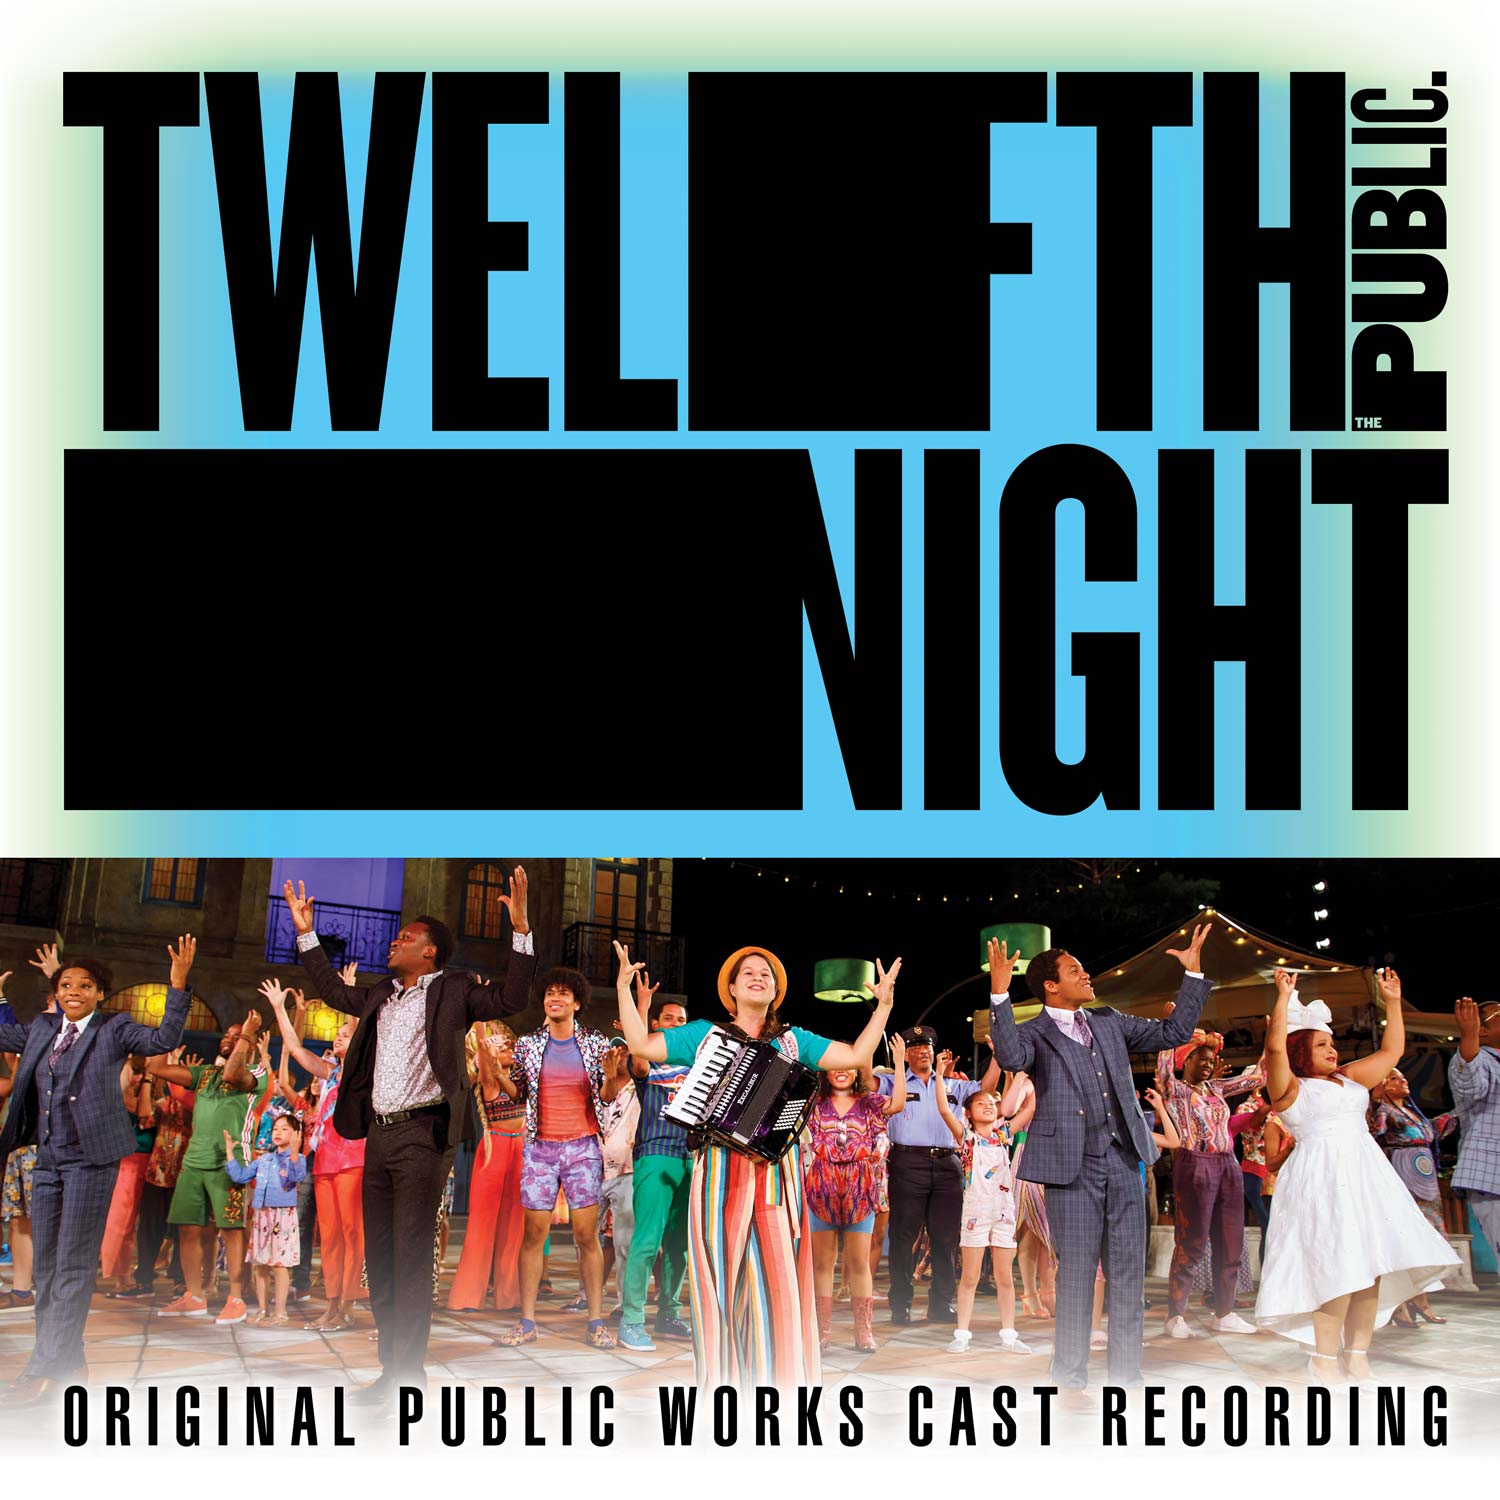 Featured image for “TWELFTH NIGHT (ORIGINAL PUBLIC WORKS CAST RECORDING) [Digital Album]”